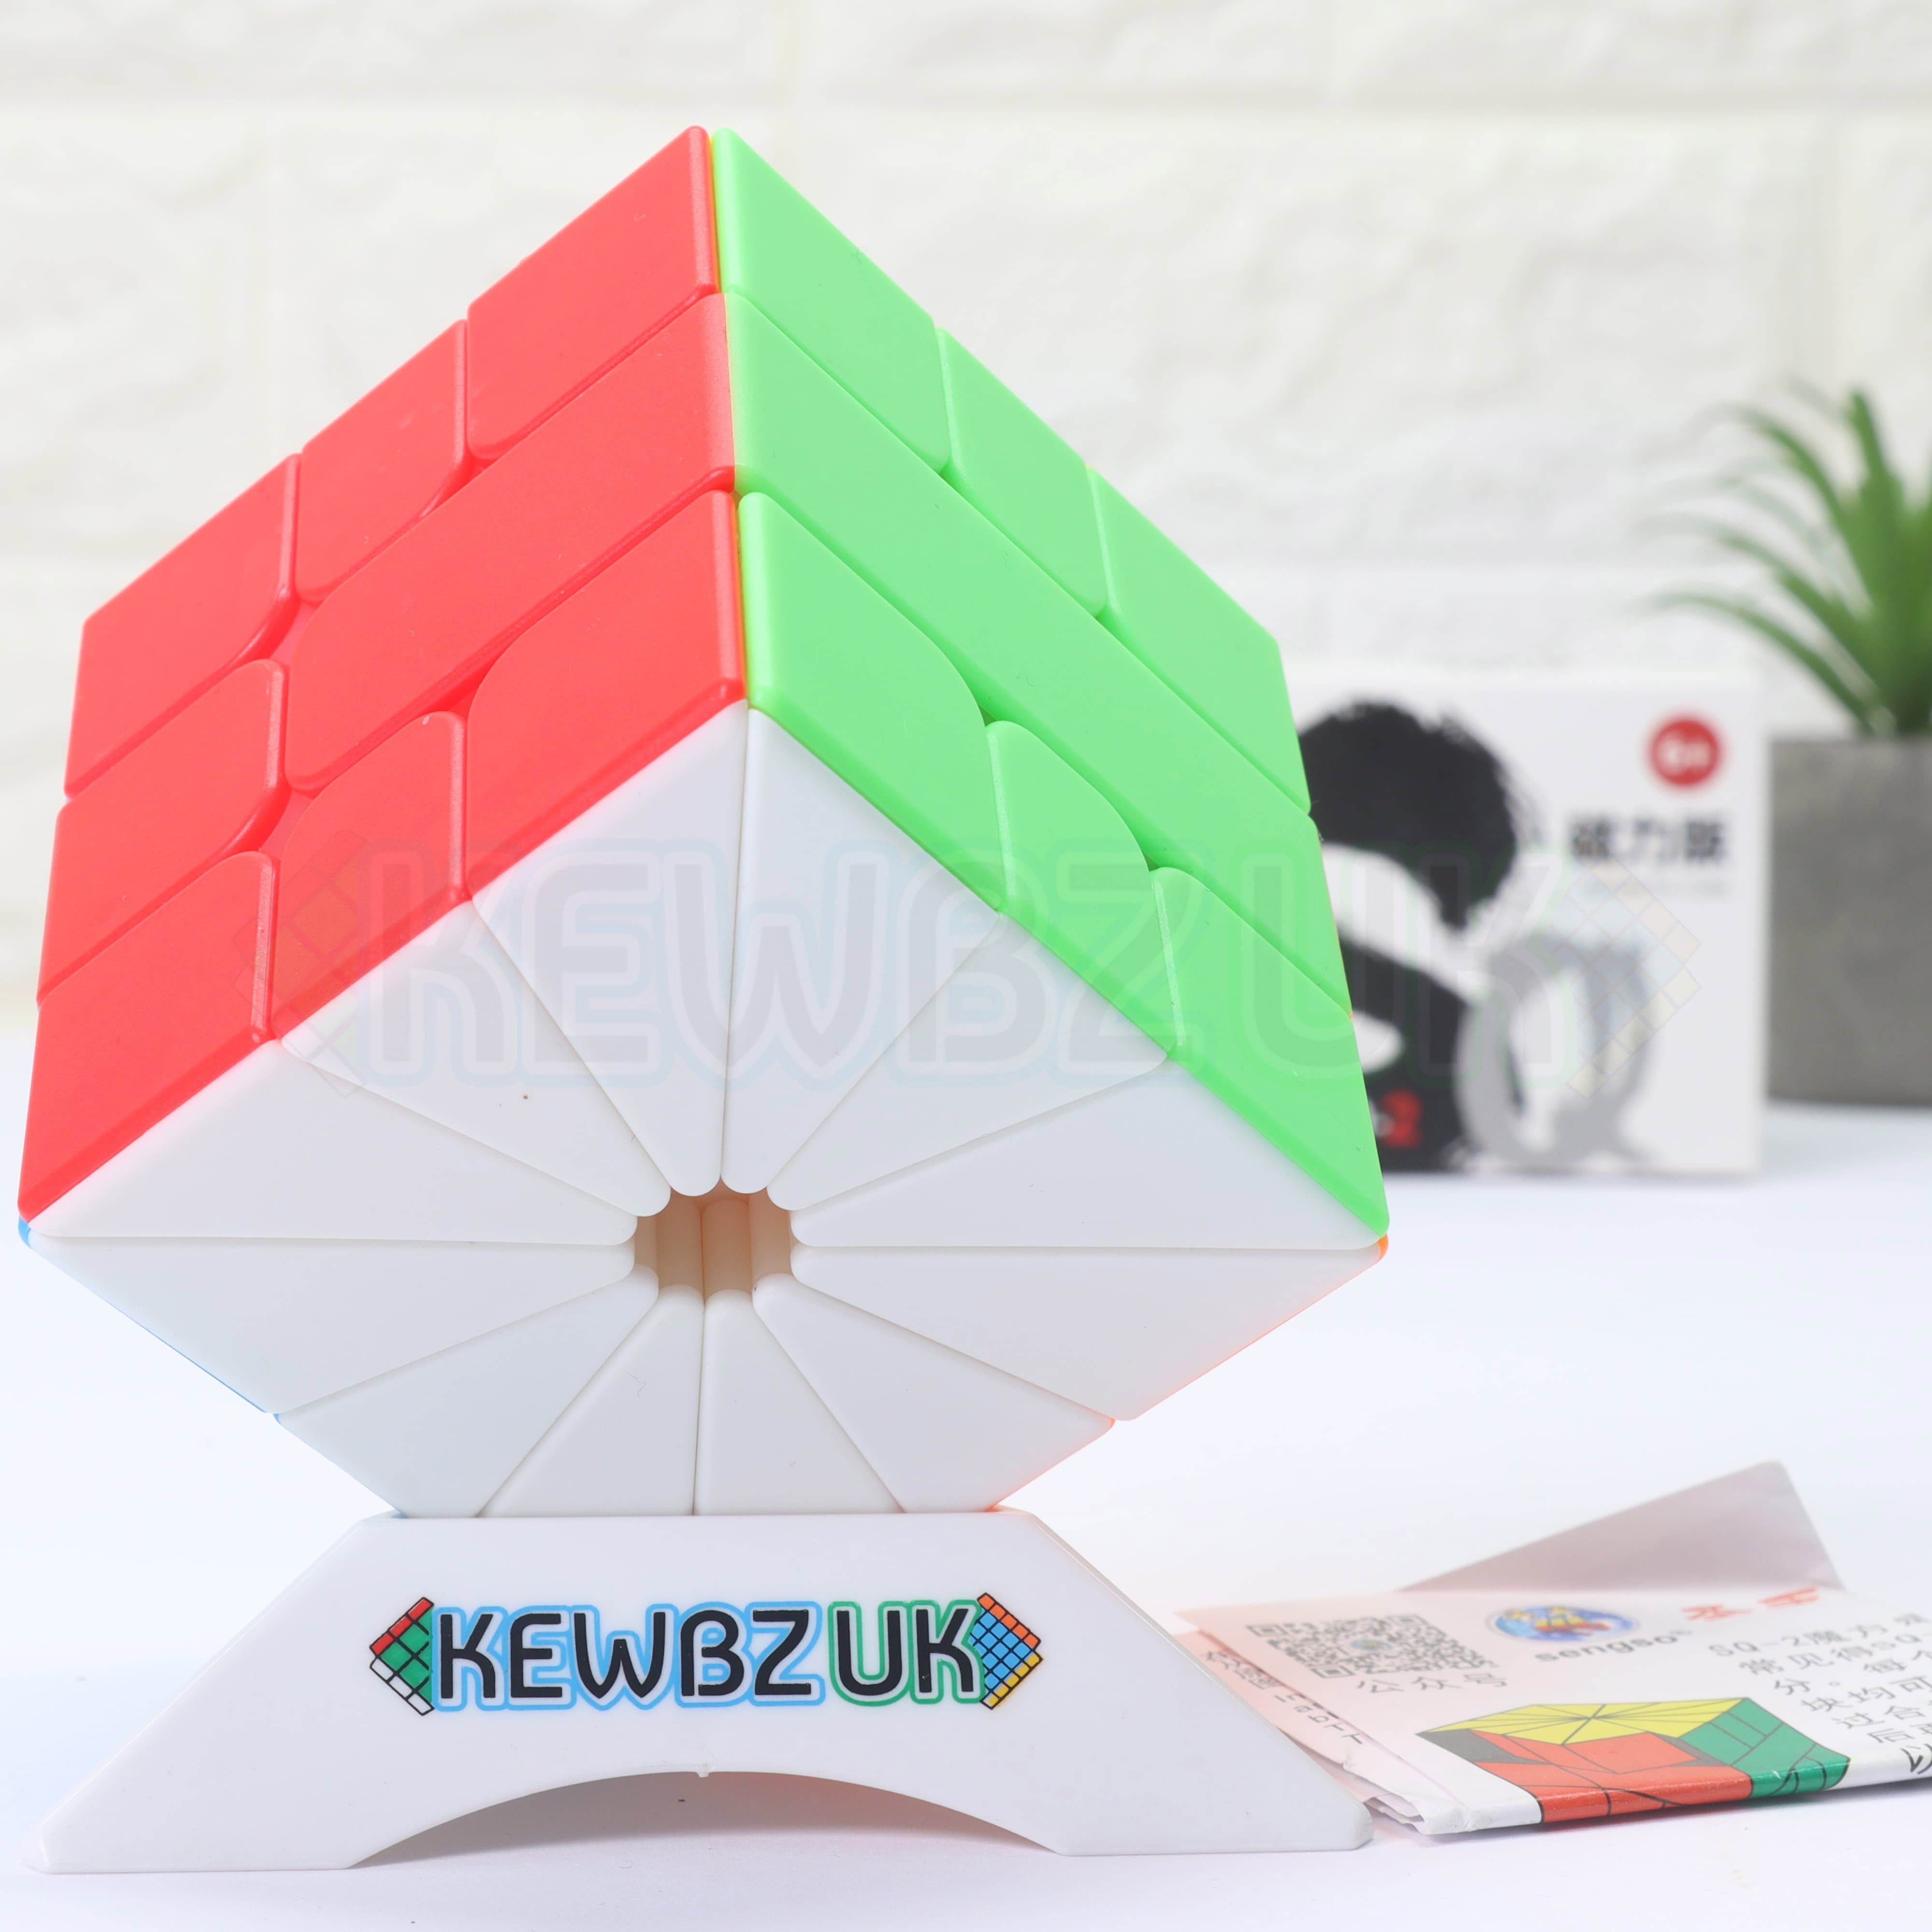 Square-0+ – KewbzUK